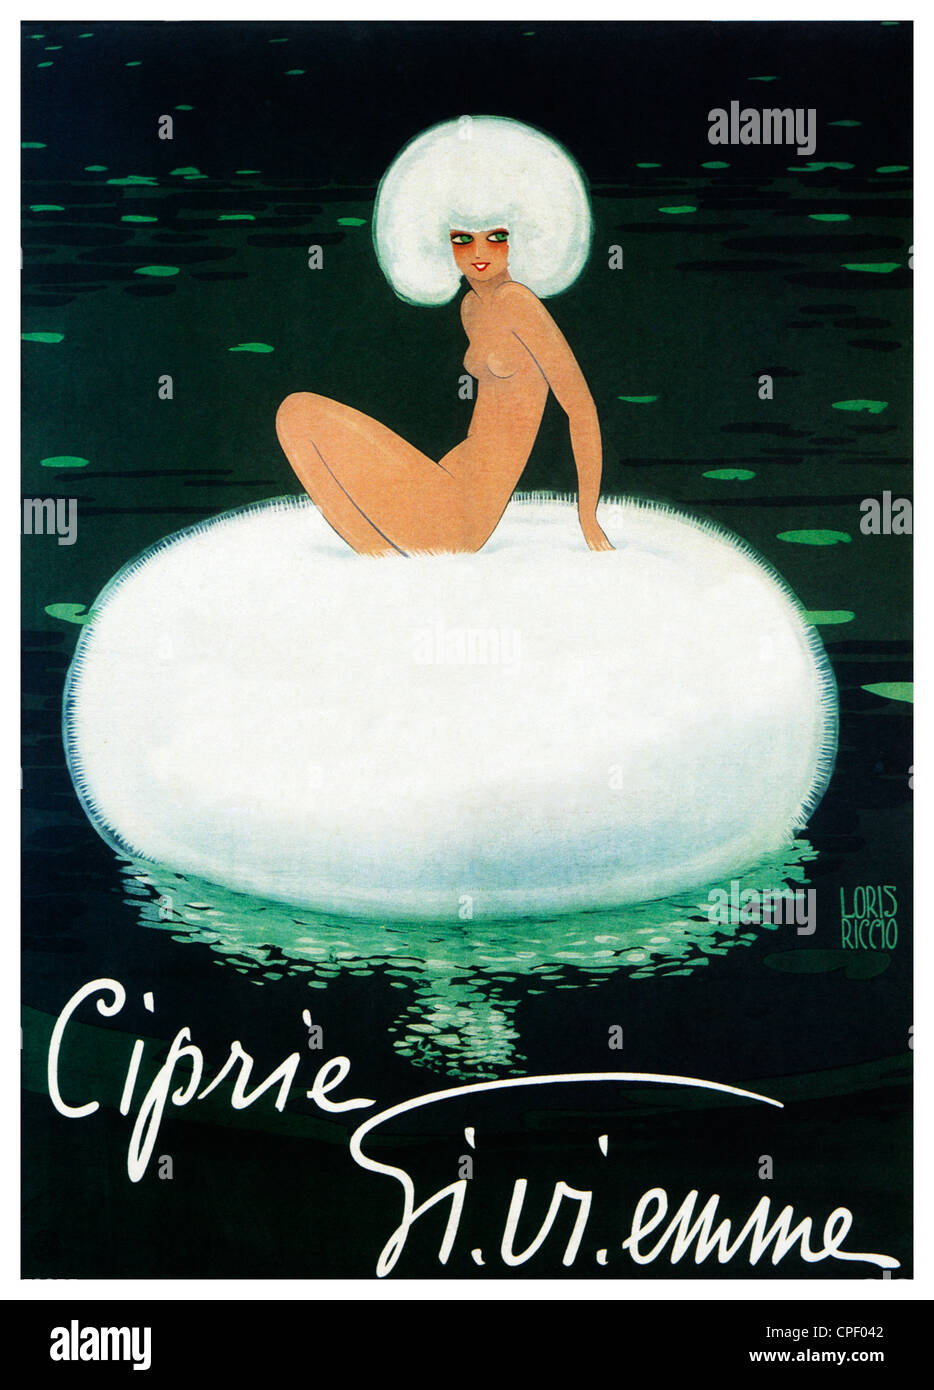 Ciprie Gi Vi Emme, 1920 Art Deco-Plakat für die italienischen Gesichtspuder, Blätterteig auf einen Seerosenteich schwimmen Stockfoto